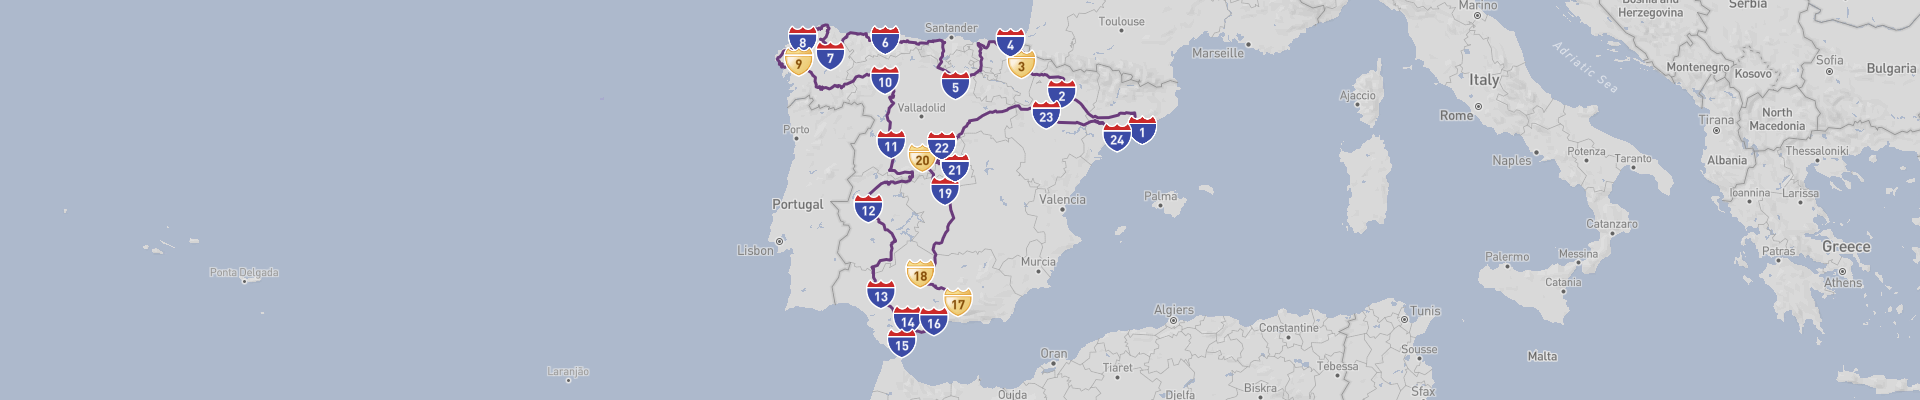 Itinéraire Espagne 